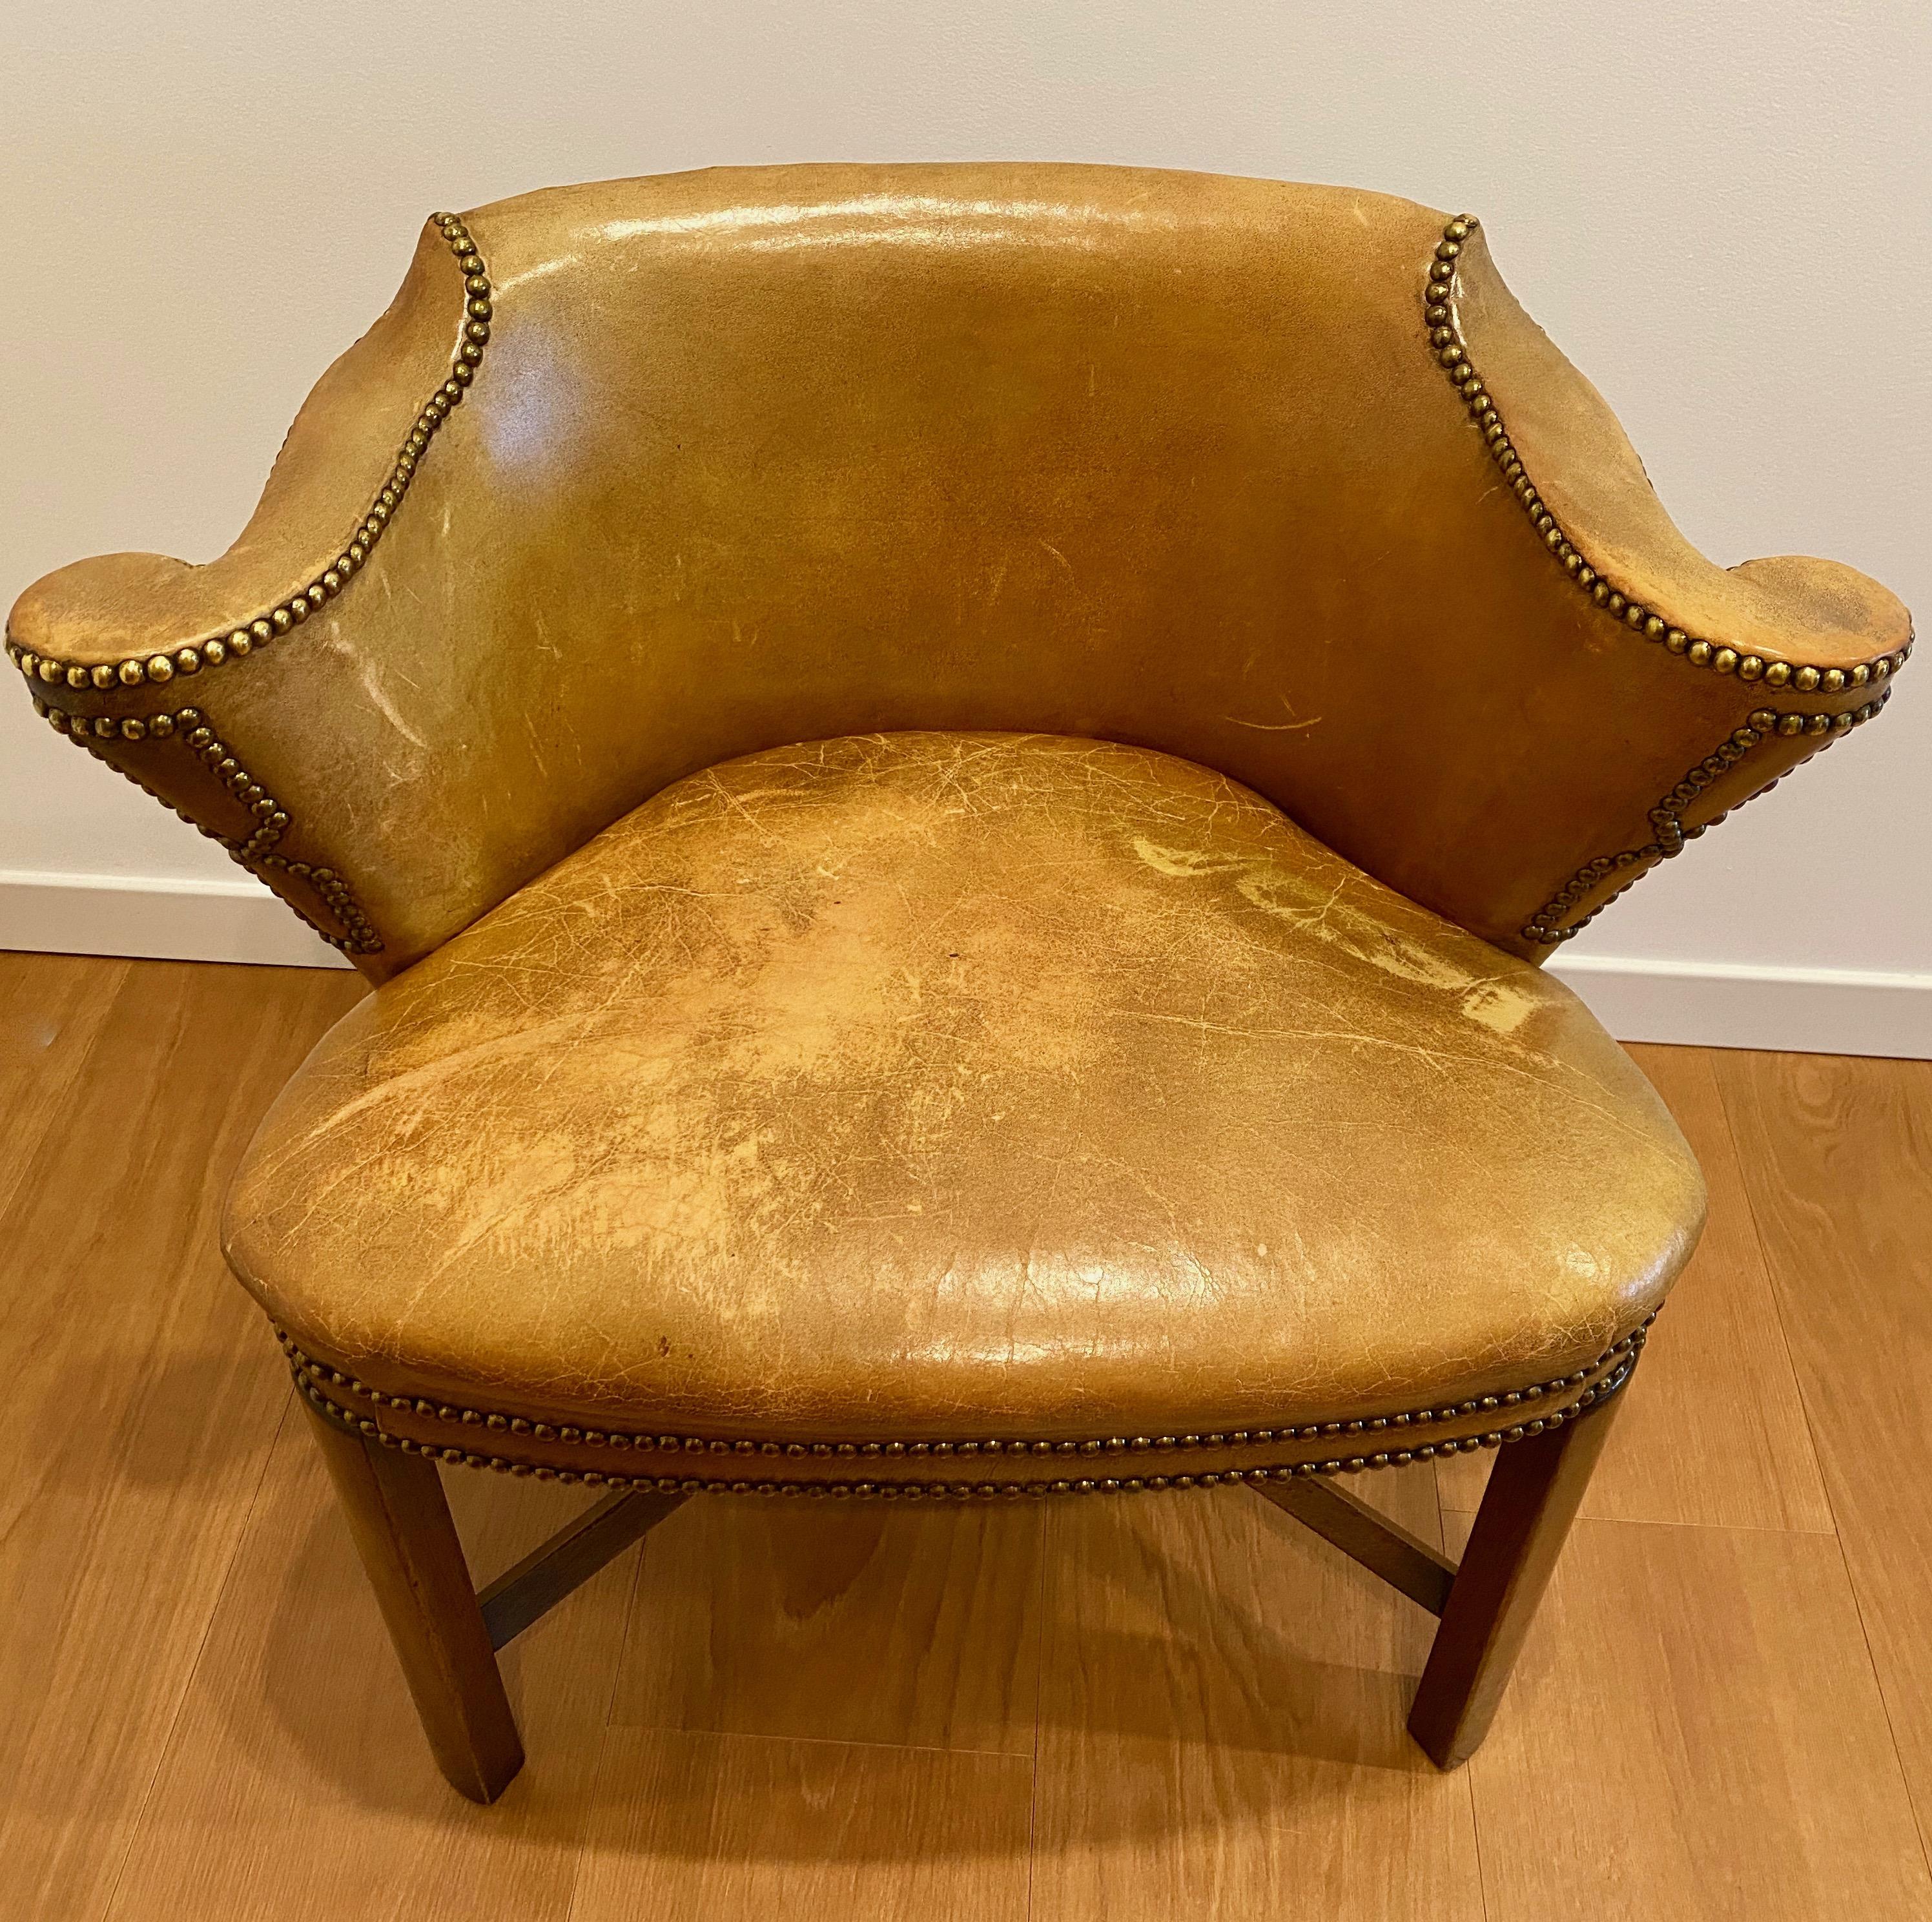 Fauteuil de bibliothèque édouardien en chêne et cuir, vers 1905 1905

Ce fauteuil de bibliothèque de forme inhabituelle est anglais de la période édouardienne (1901-1910). Il reprend l'ère nouvelle que le mobilier et tous les arts visuels ont